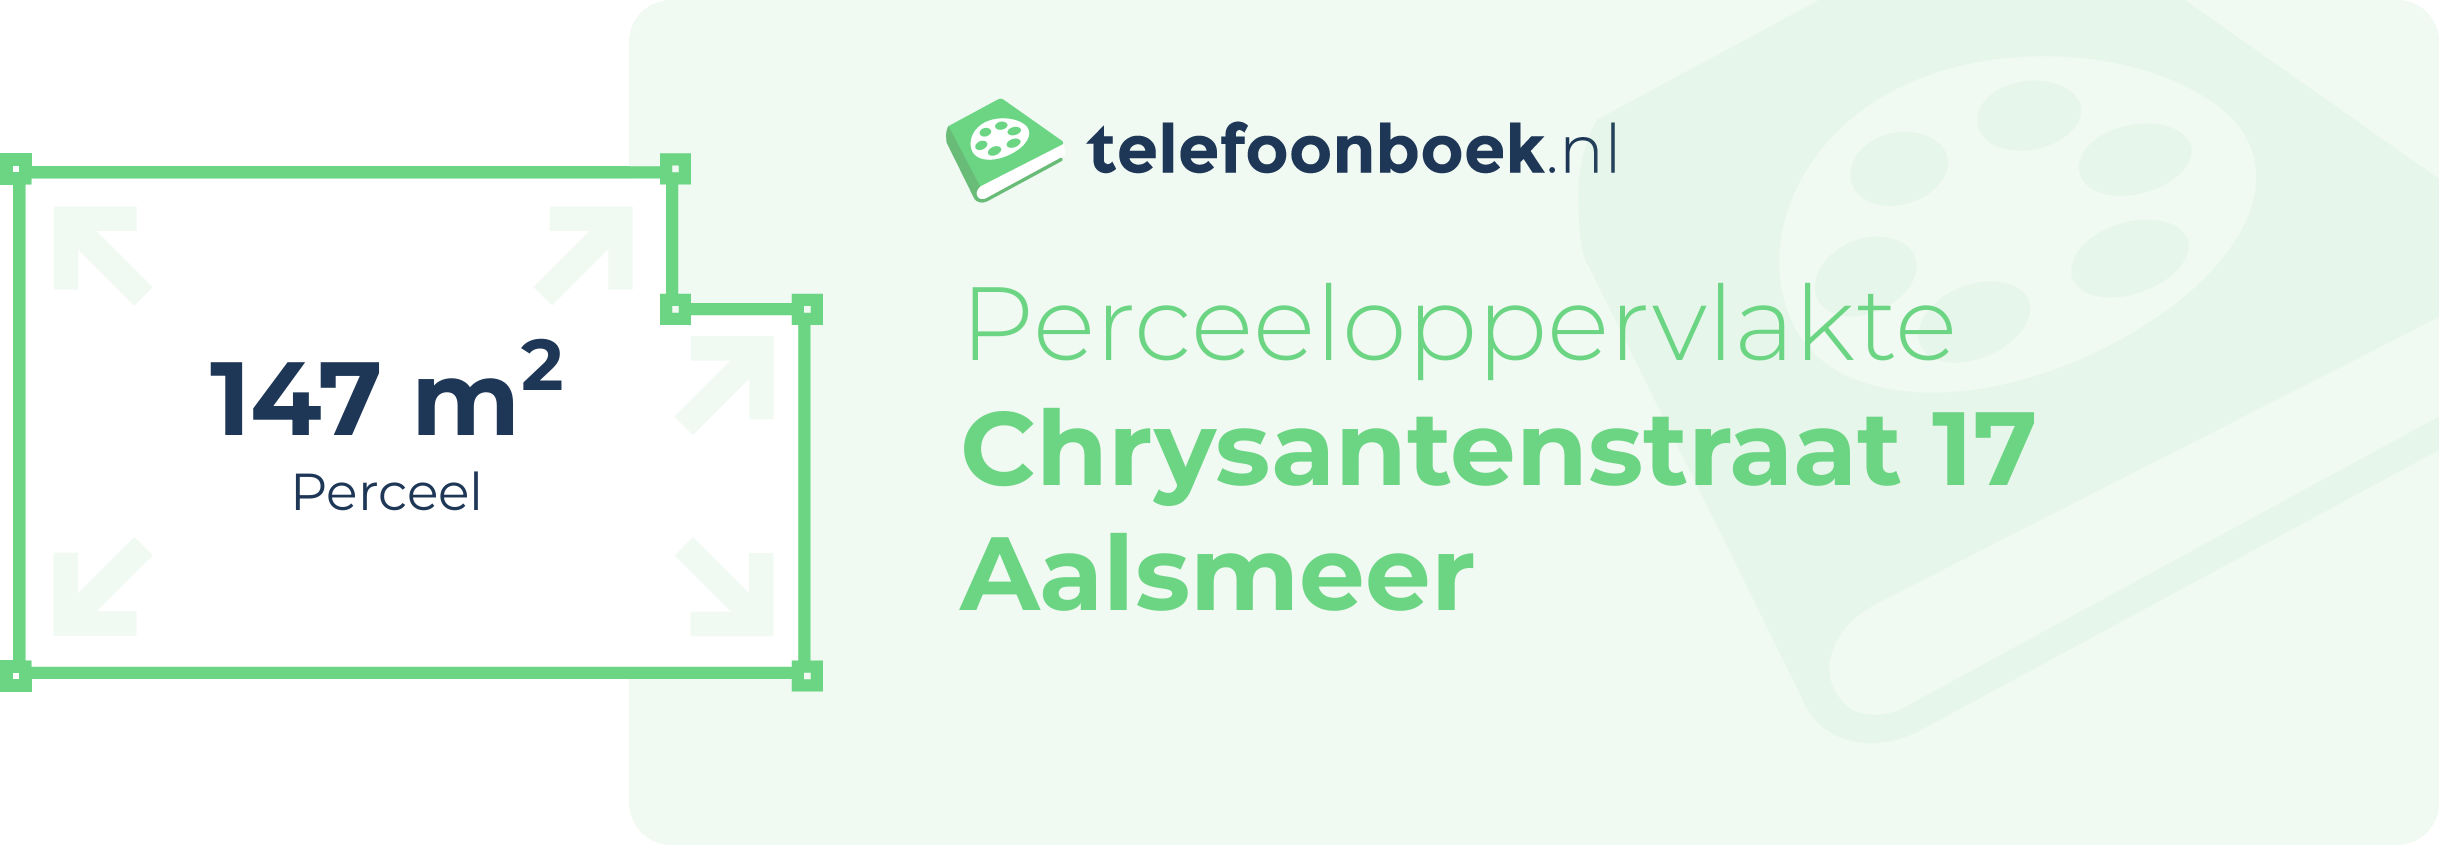 Perceeloppervlakte Chrysantenstraat 17 Aalsmeer